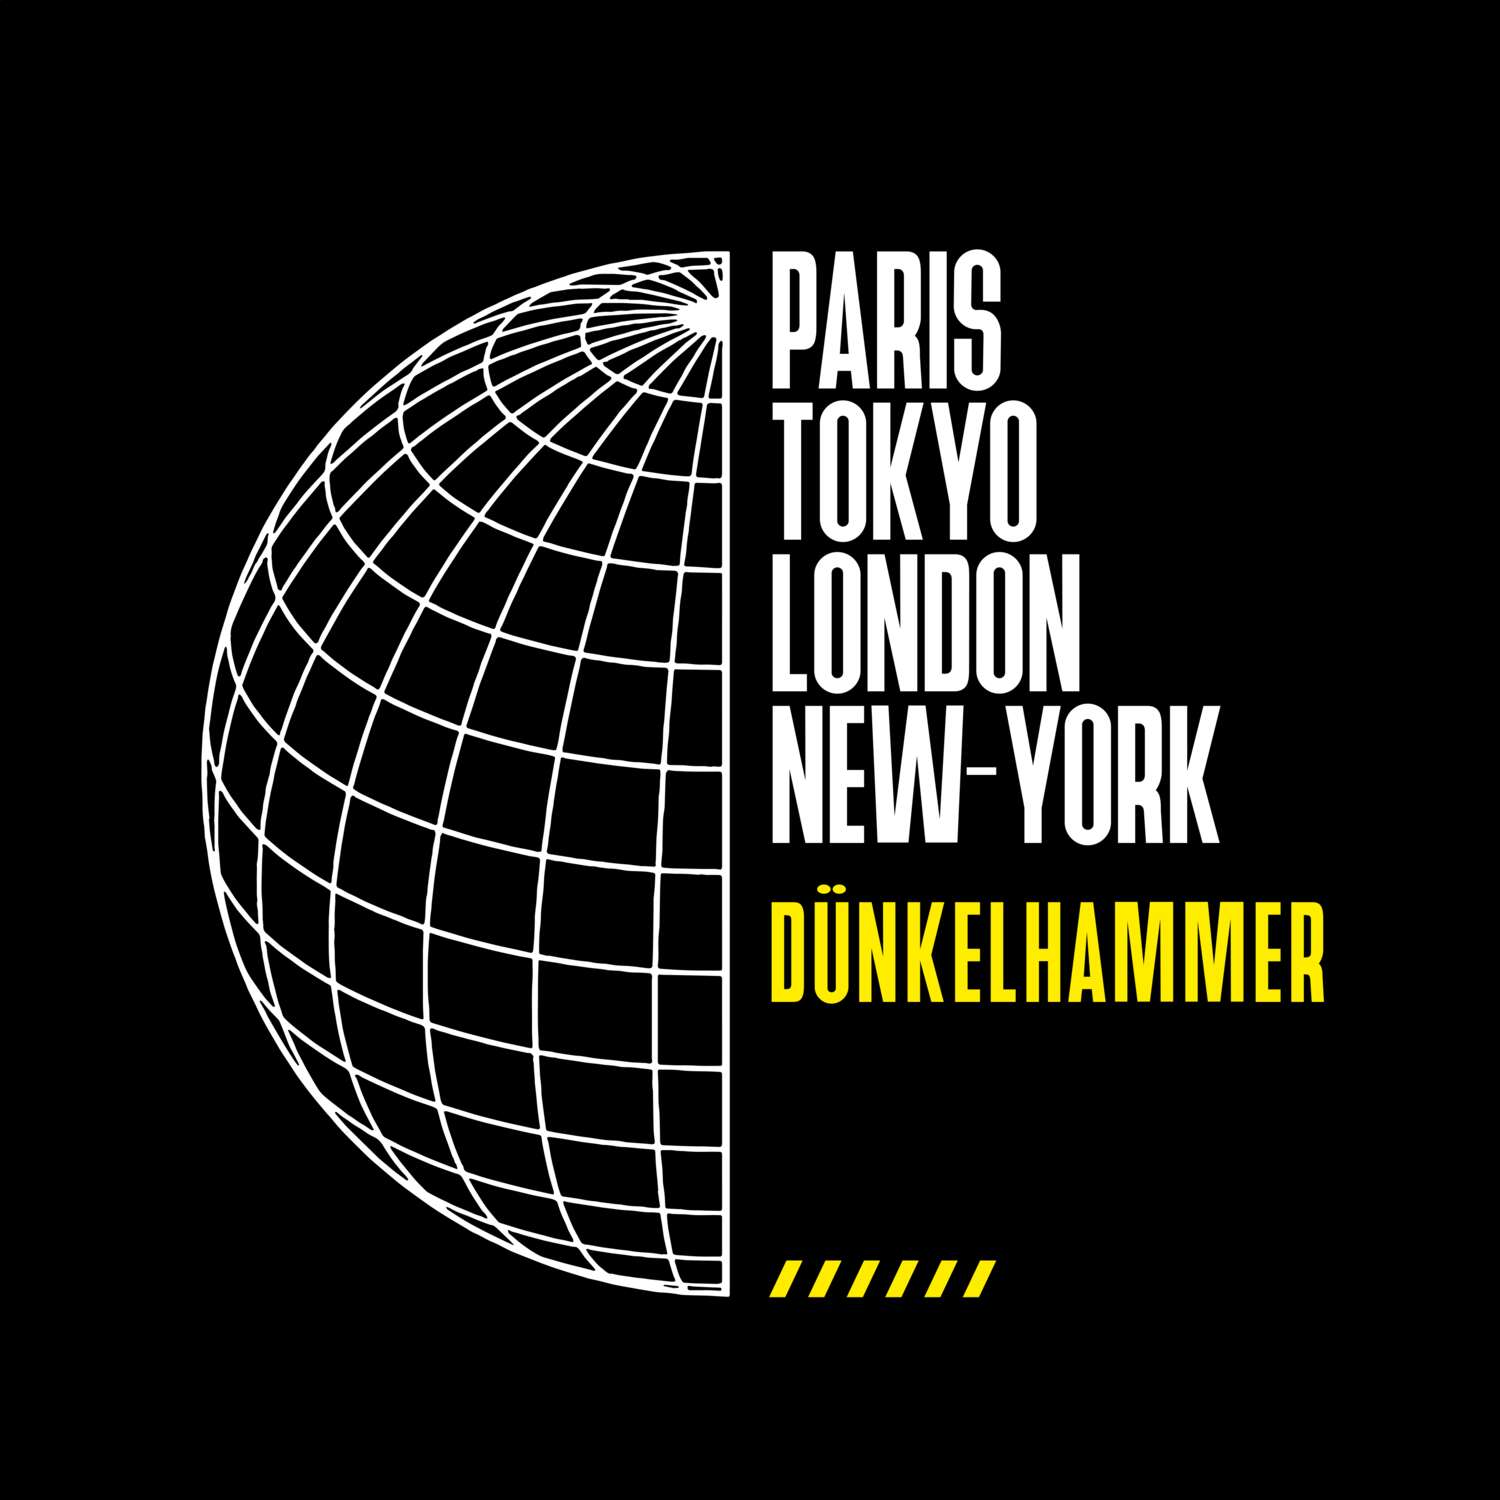 Dünkelhammer T-Shirt »Paris Tokyo London«